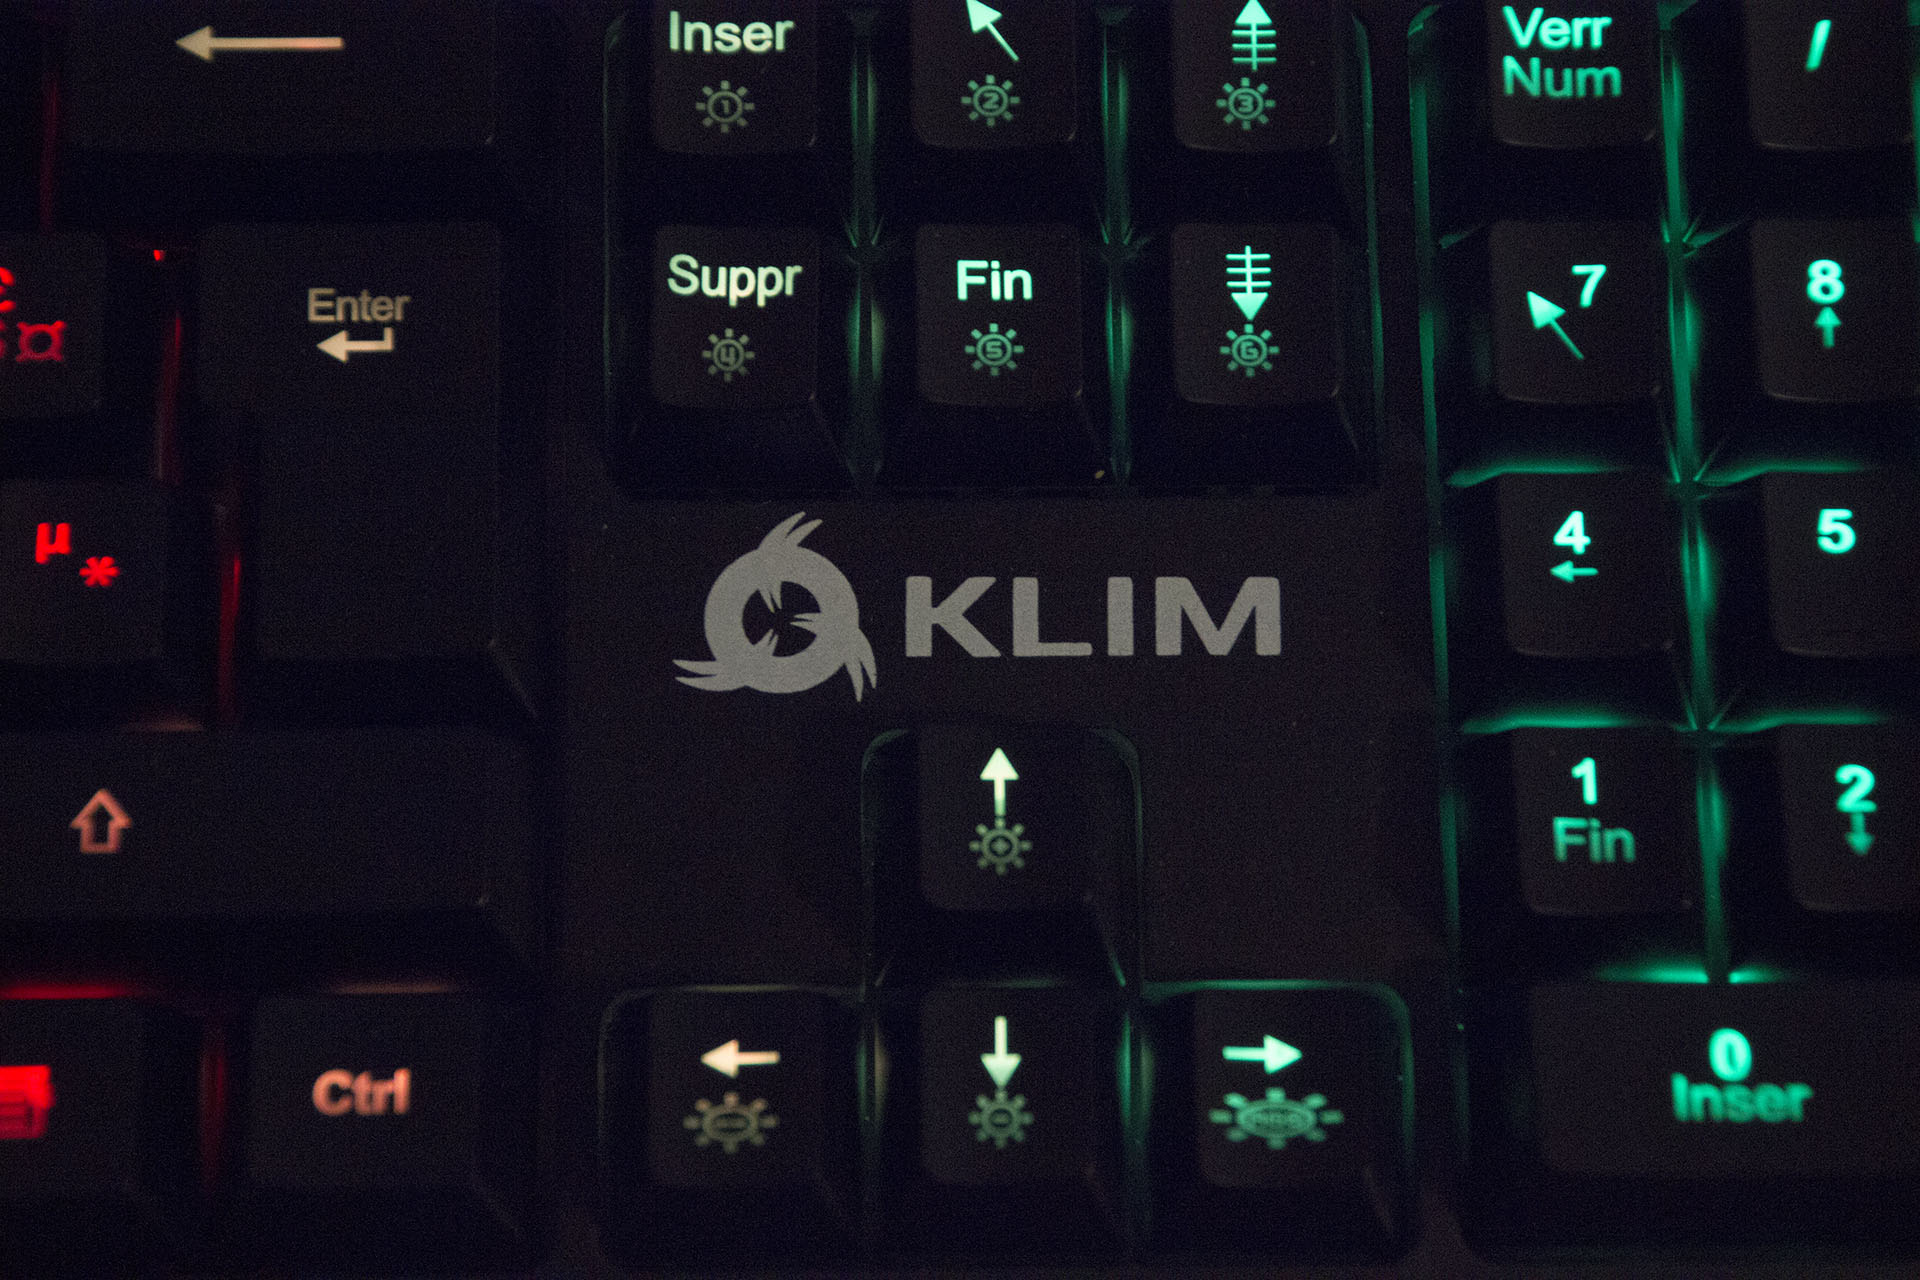 Clavier gaming KLIM Domination : Test et avis - 59 Hardware